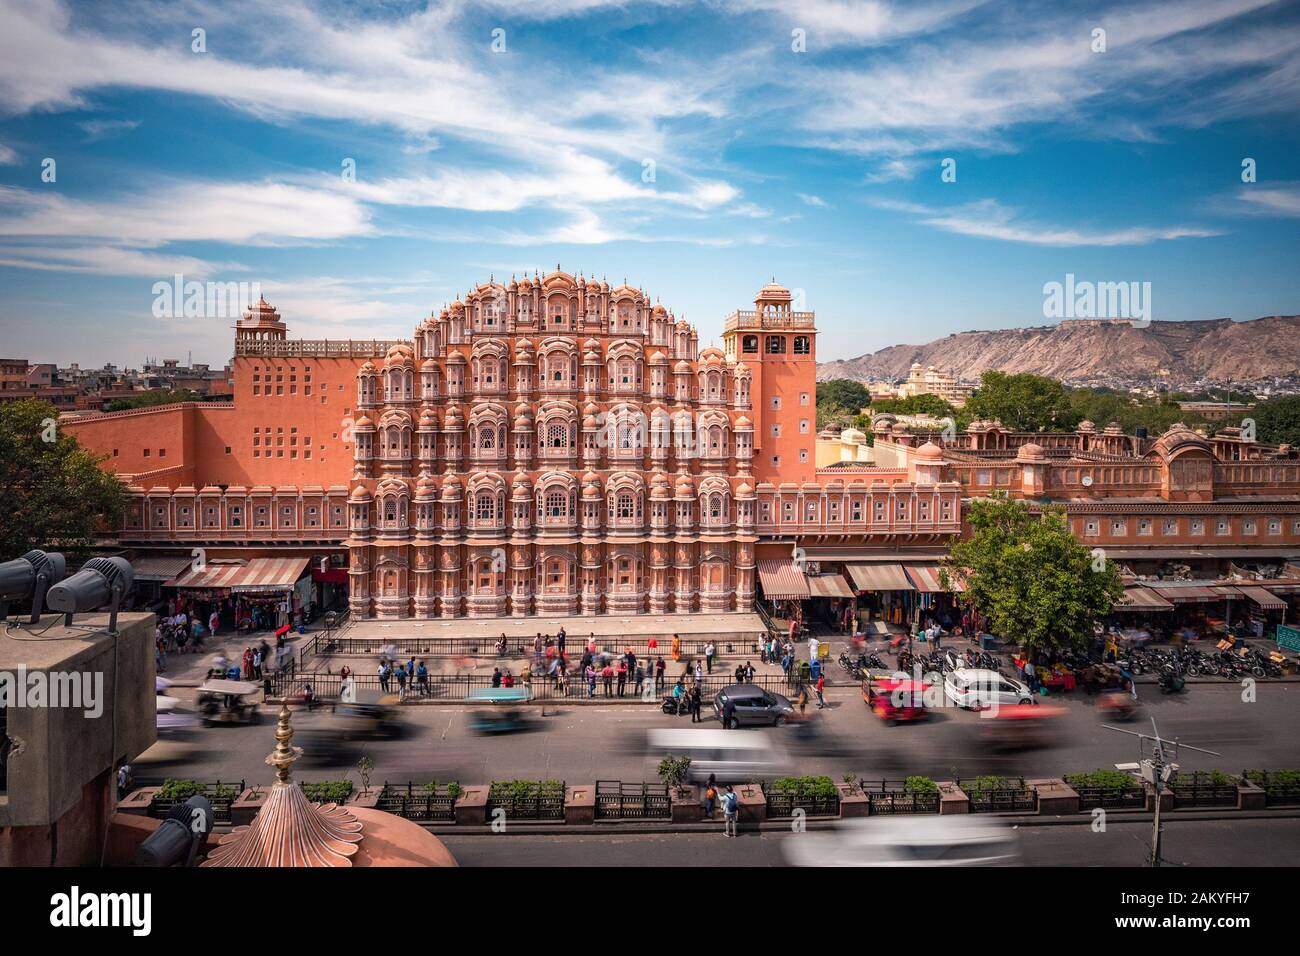 Architektonisches Wahrzeichen Hawa Mahal, auch bekannt als Palast der Winde in Jaipur, Rajasthan, Indien. Stockfoto